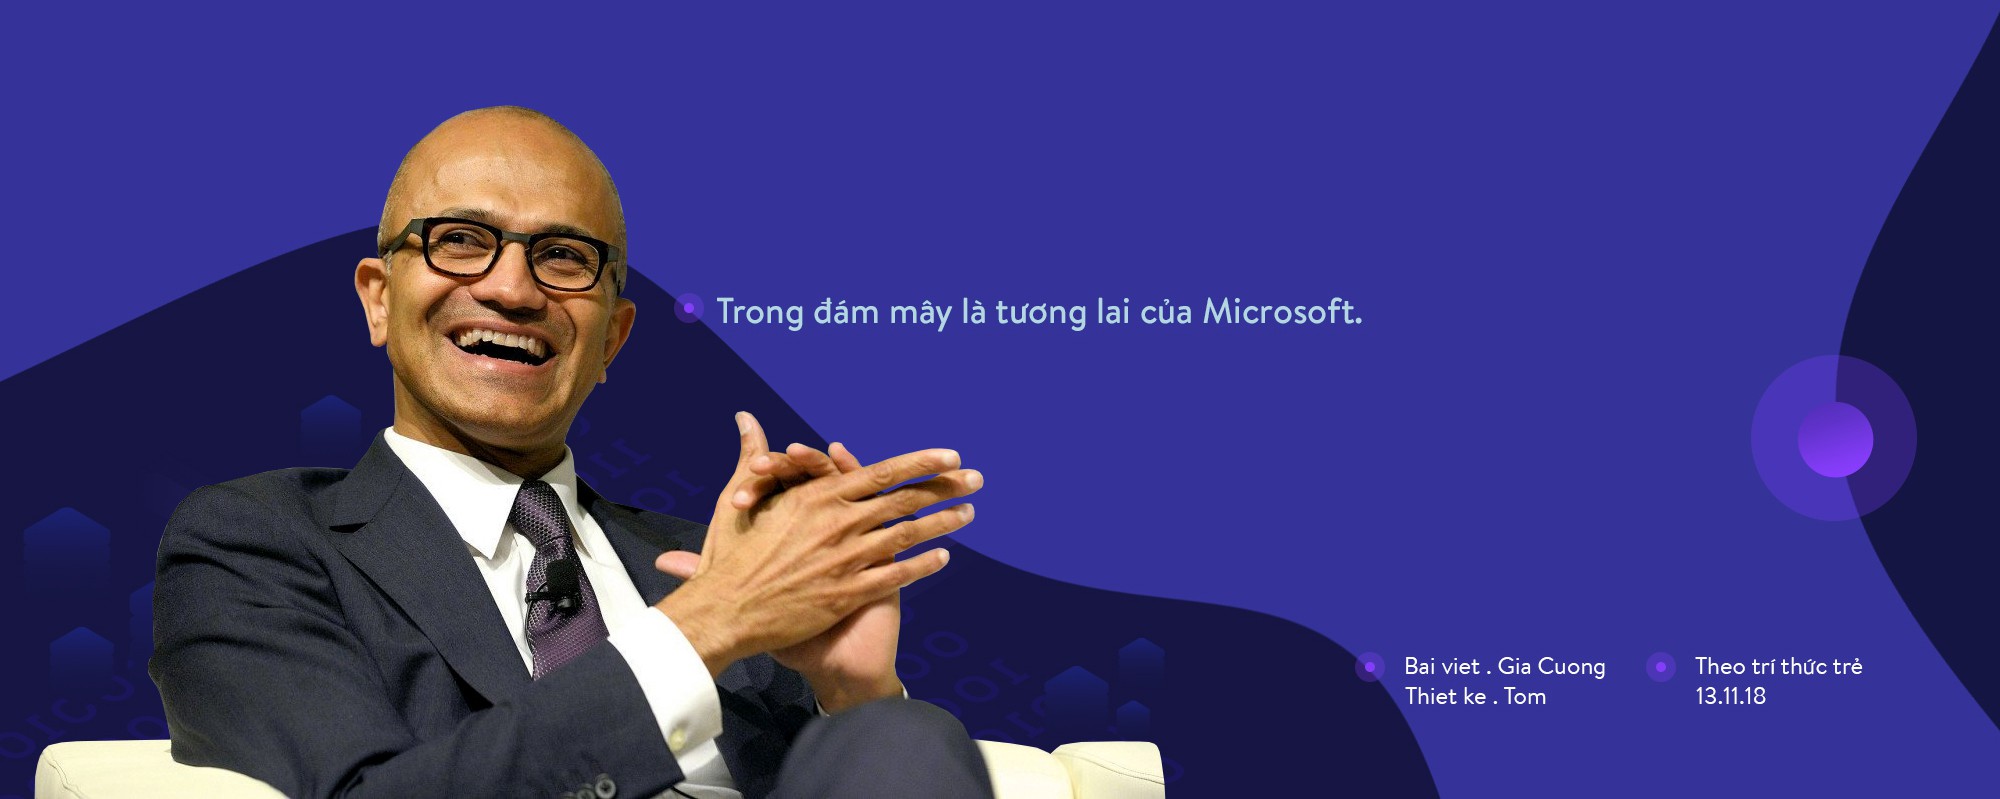 Microsoft: Rũ bỏ quá khứ bằng cách xây đường cho kẻ khác tiến vào tương lai - Ảnh 20.